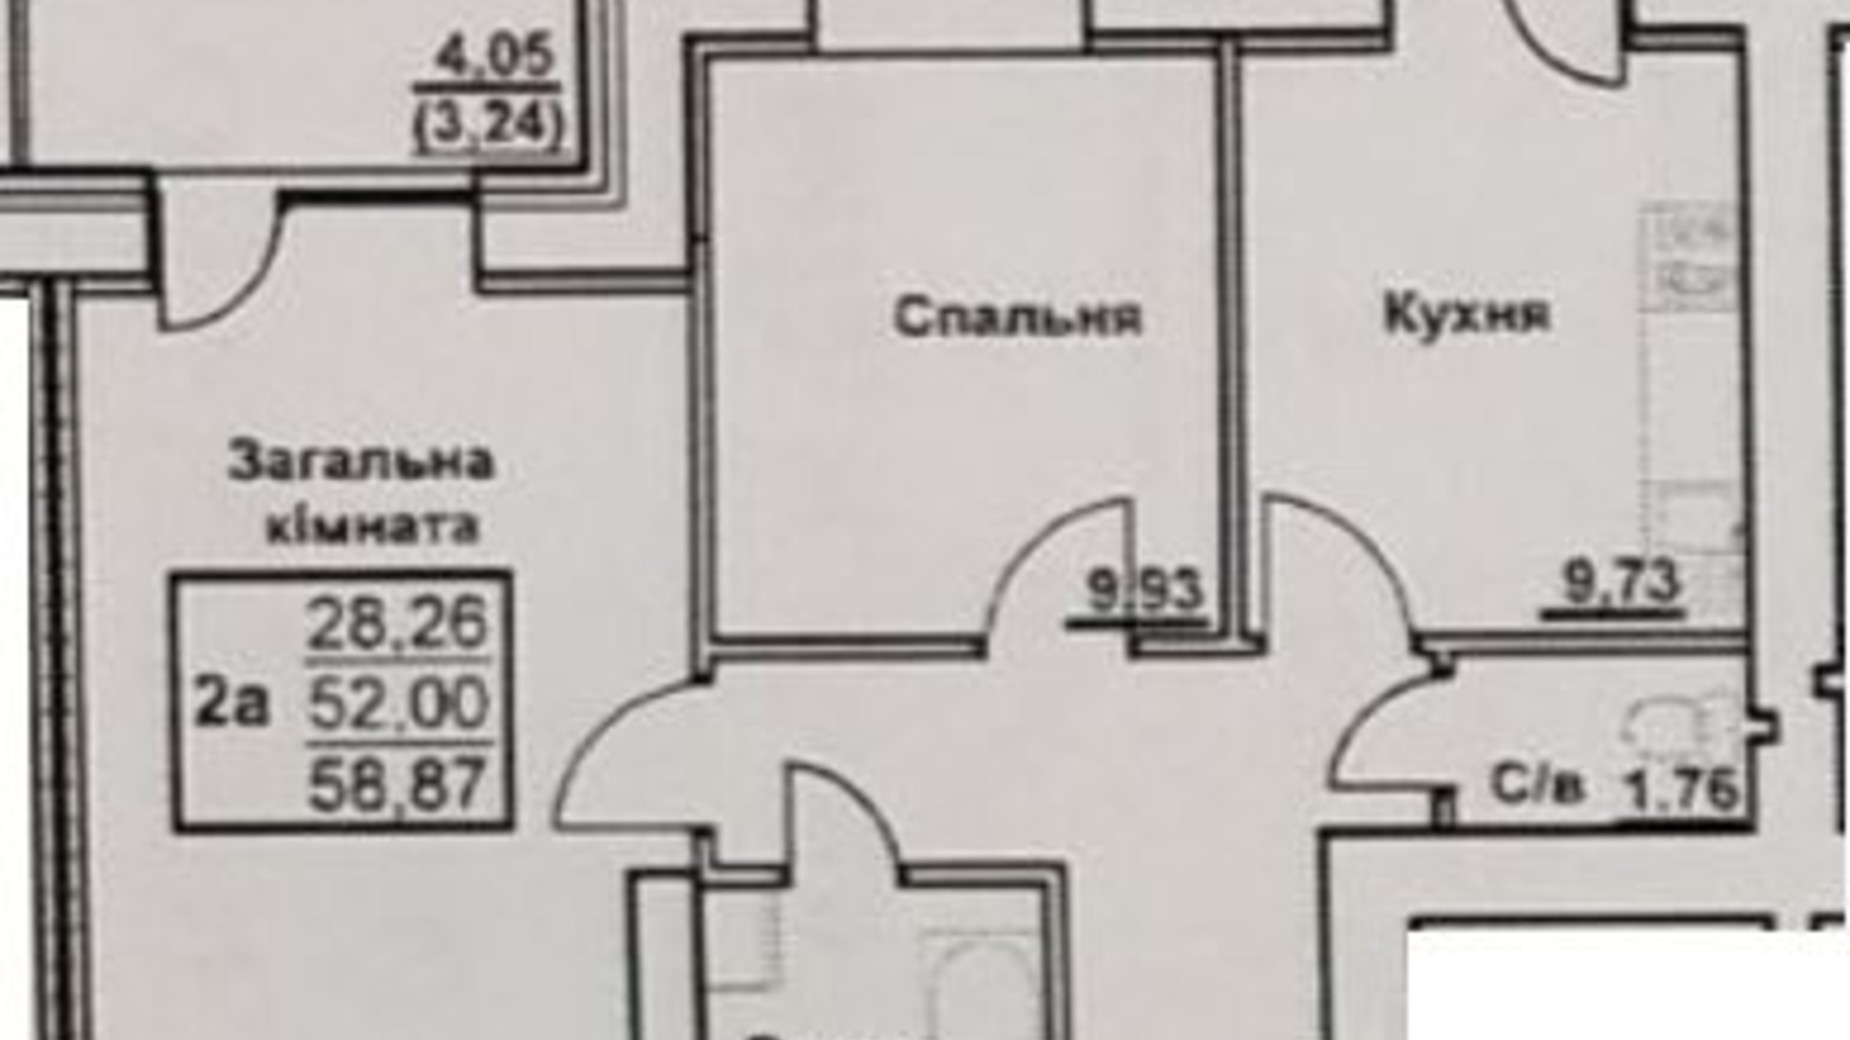 Планировка 2-комнатной квартиры в ЖК ул. Черновола/ул. Первомайская 58.87 м², фото 304752